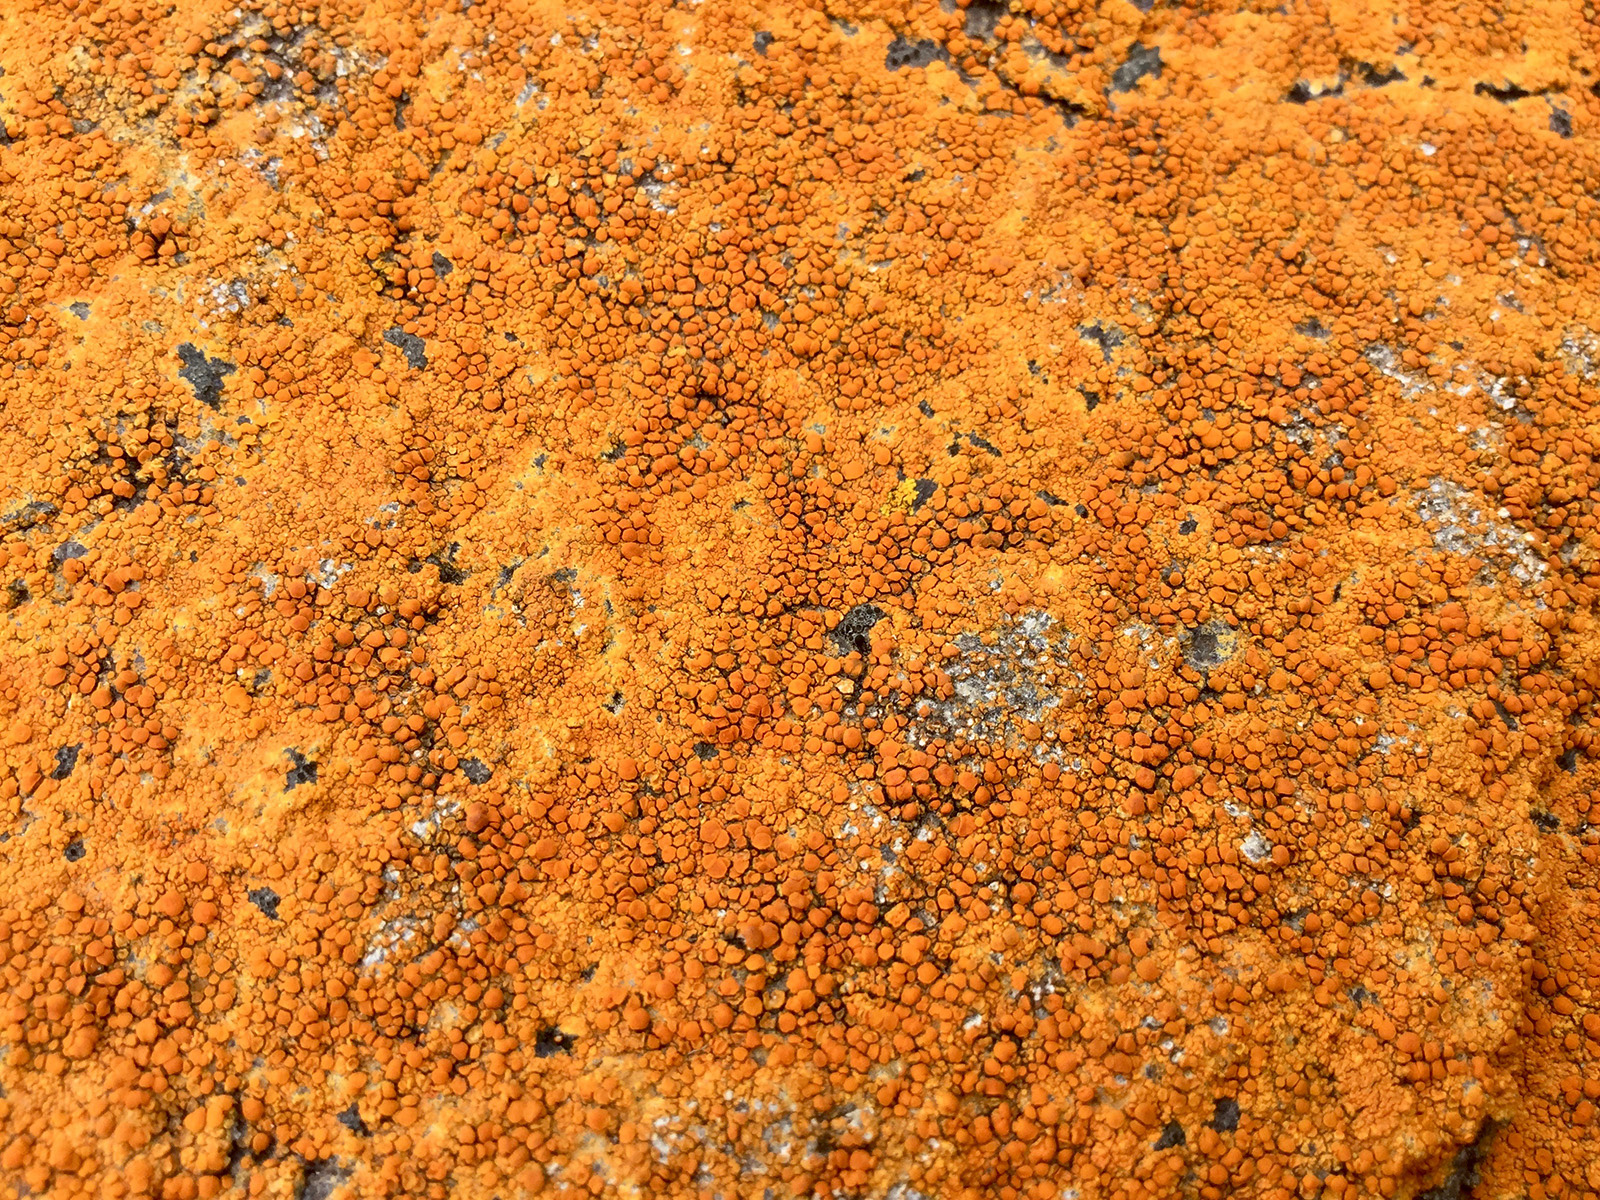 Lichen on the rocks at Granton Shore, Edinburgh 